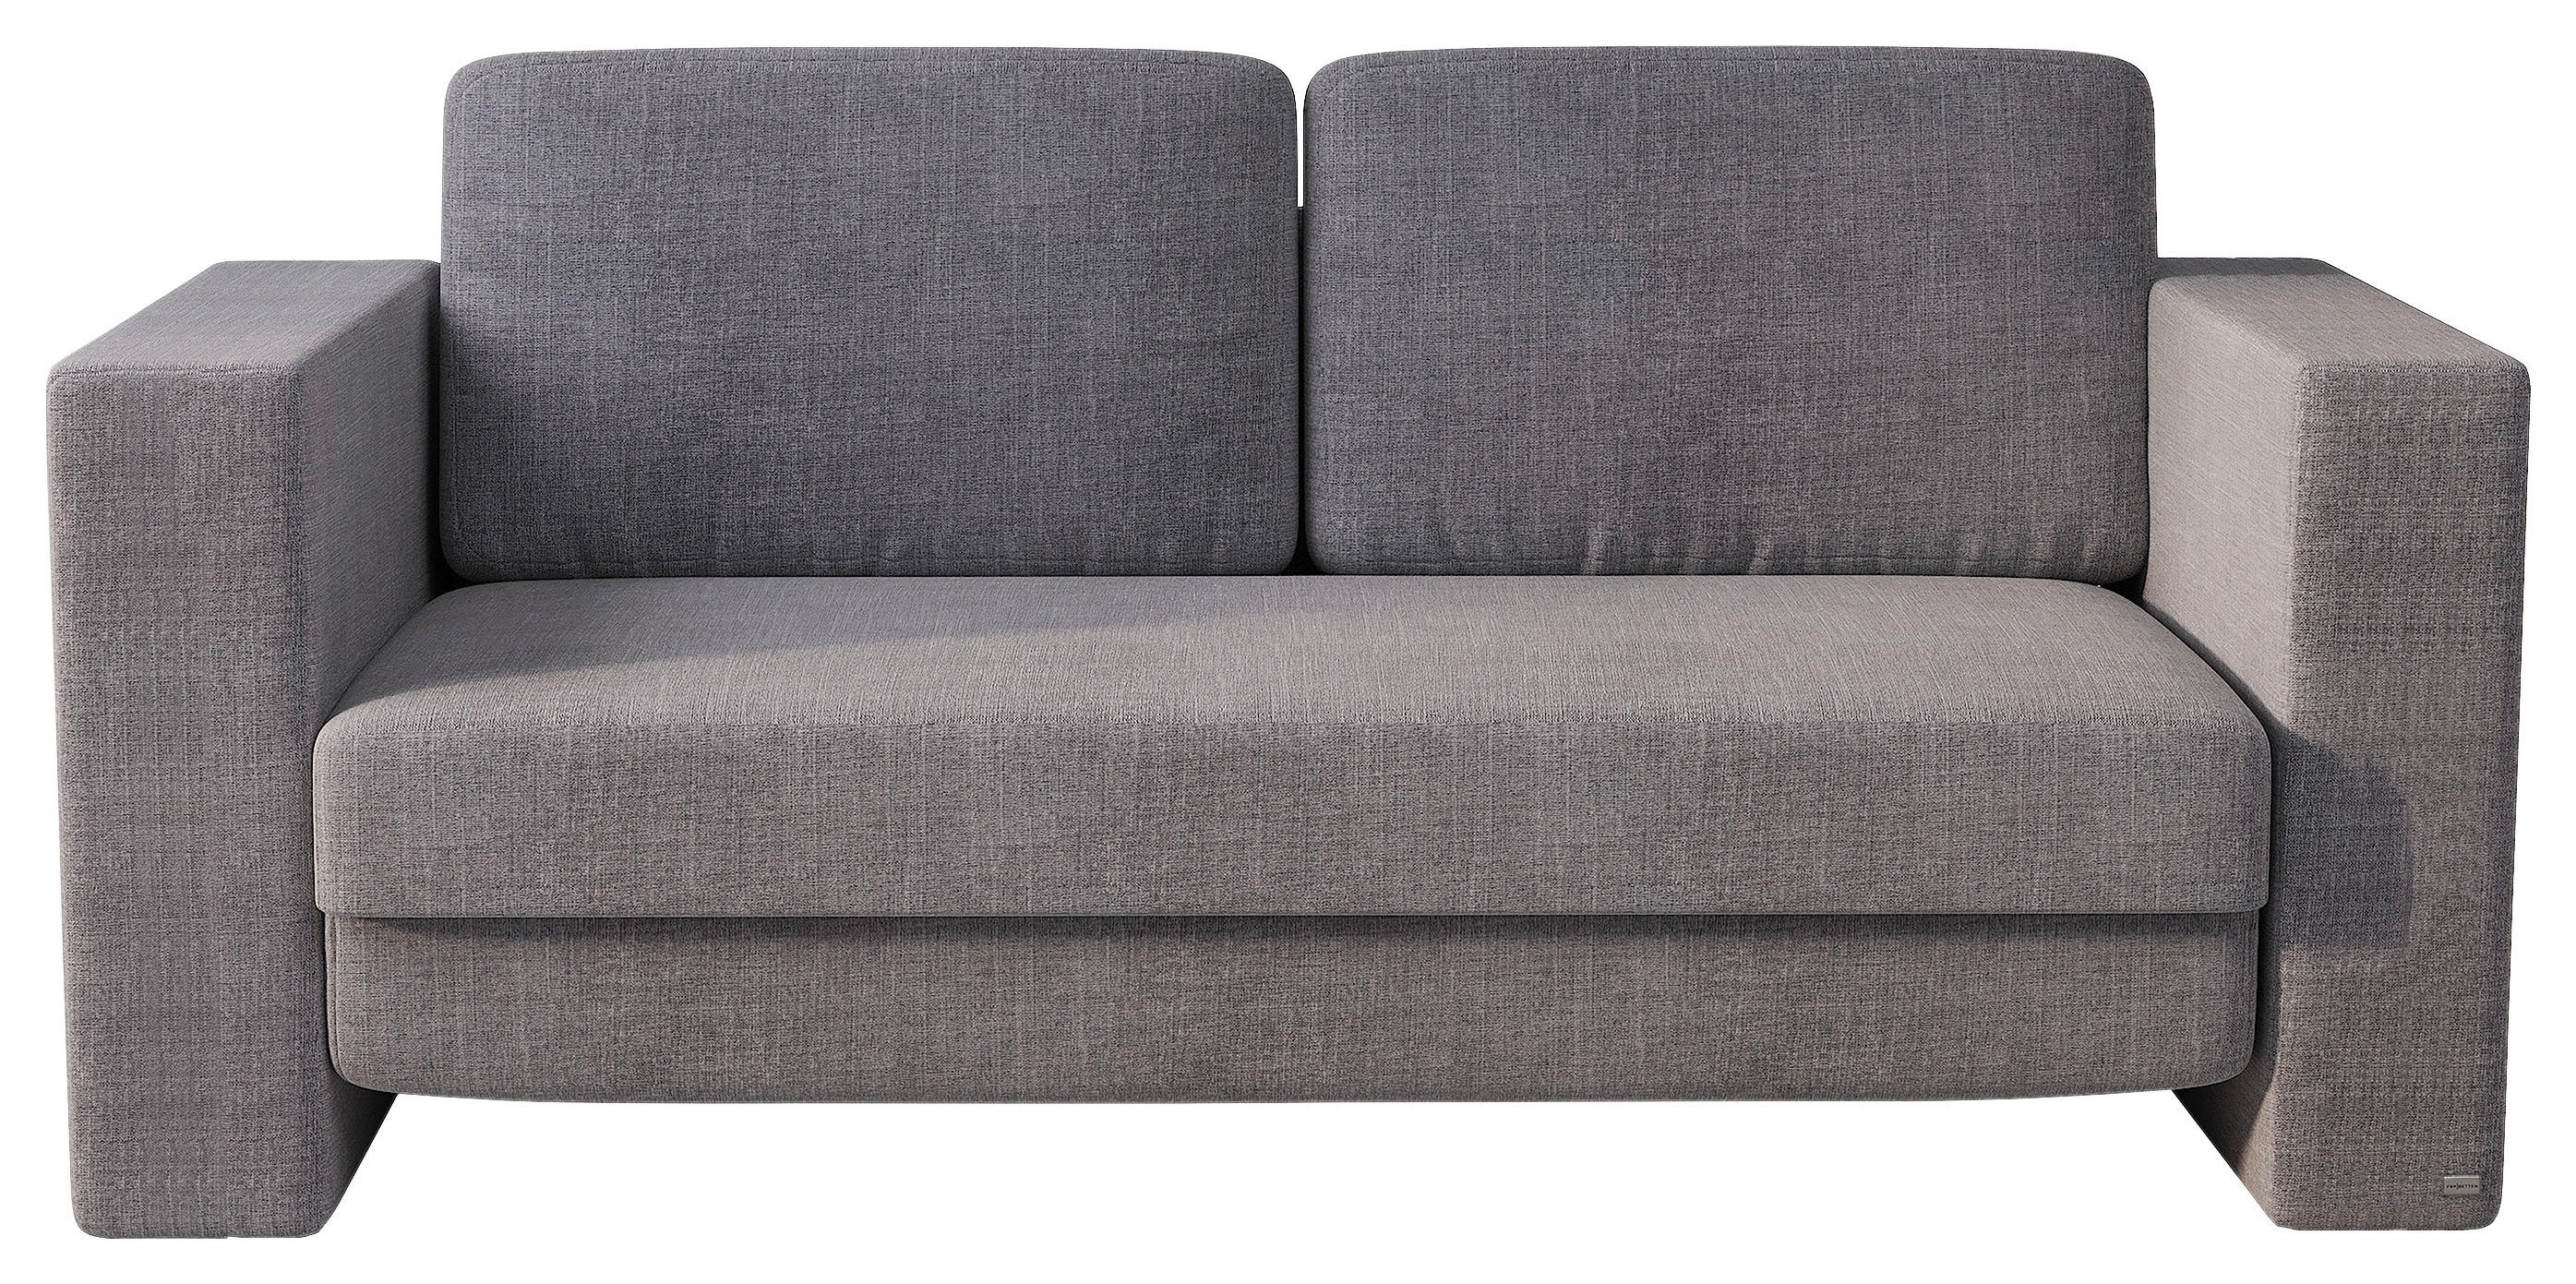 SCHLAFSOFA Grau  - Grau, Design, Textil (176/84/96cm) - RUF Betten